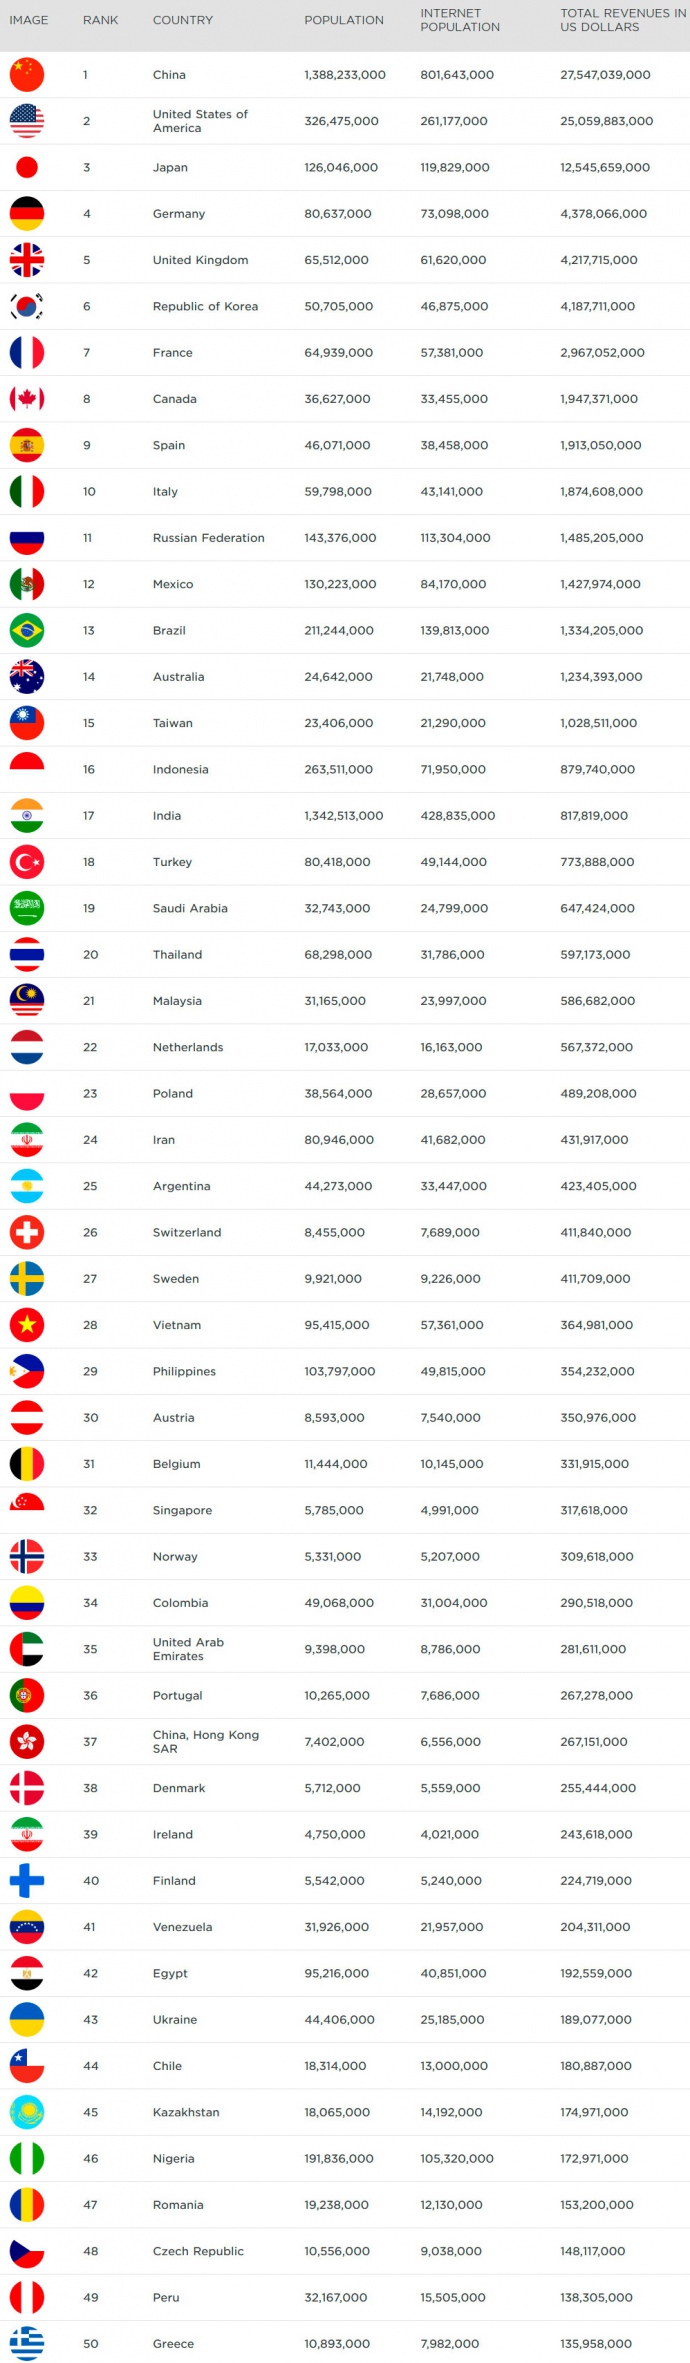 На першому місці - Китай, доходи від ігор в якому склали 27 млрд дол, на другому - США, на третьому - Японія